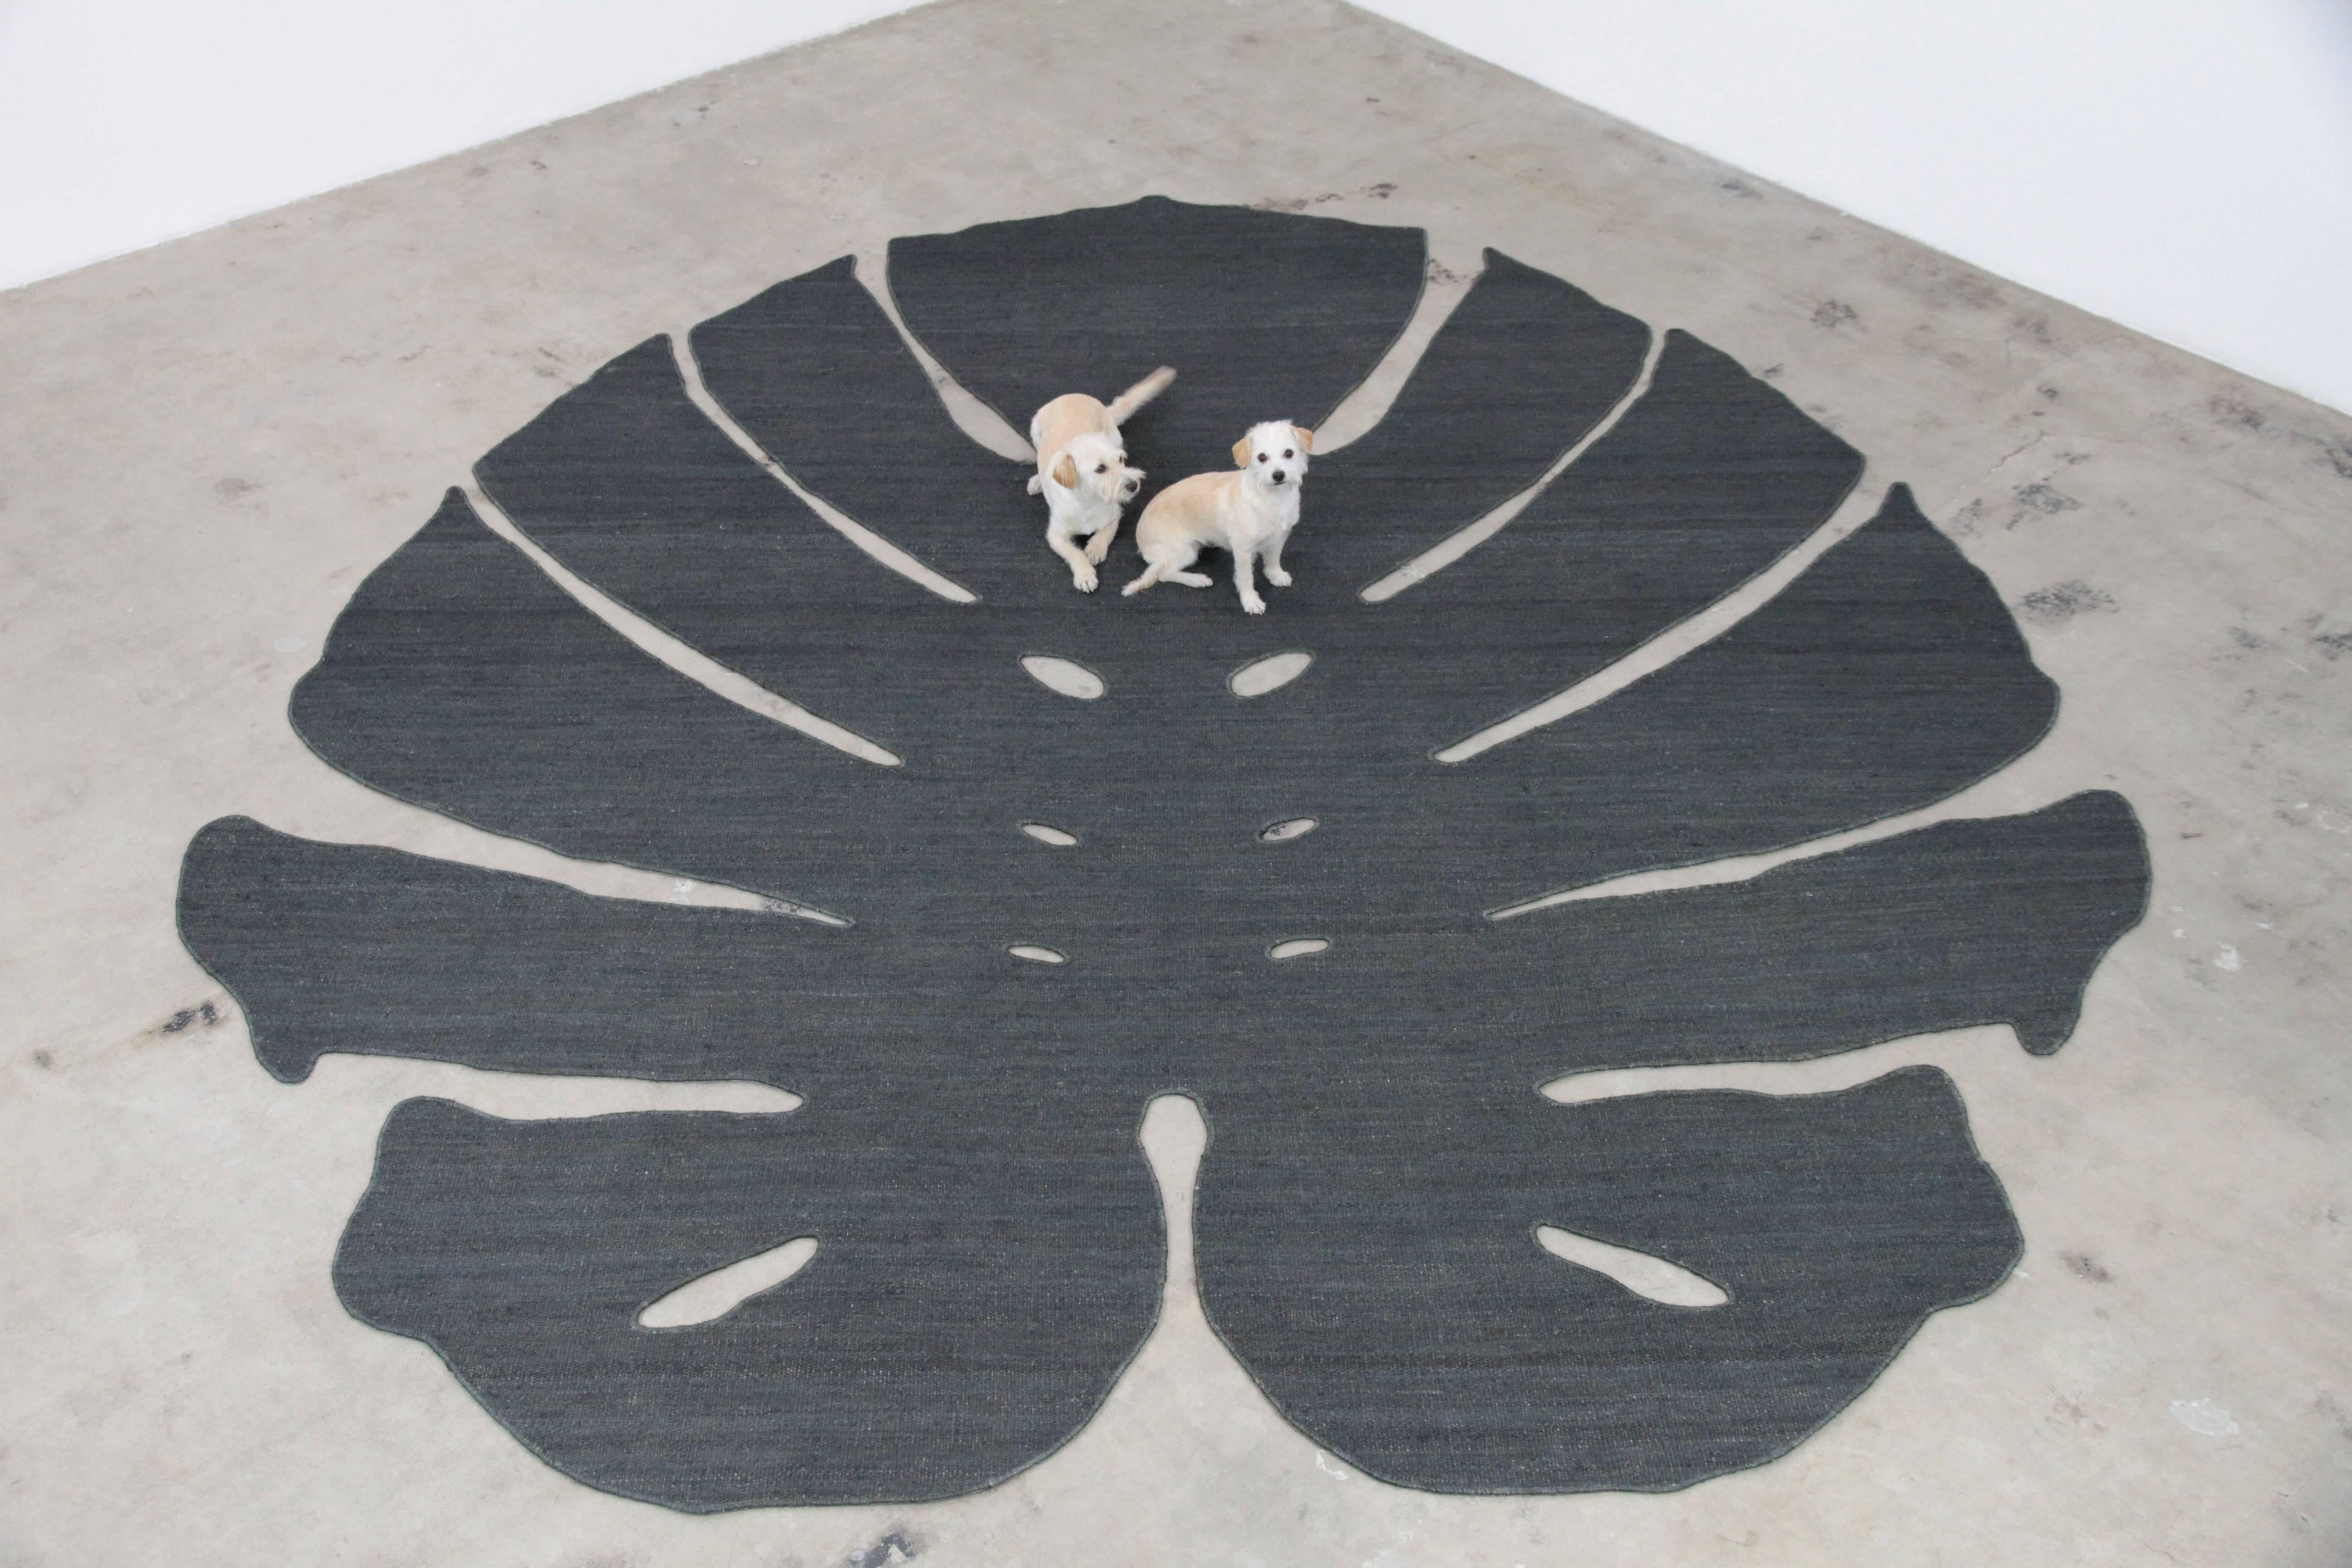 Dieser monumentale Philodendronblatt-Teppich ist aus anthrazitfarbener Jute handgewebt. Er ist an einem rutschfesten pad aus Gummi befestigt und kann mit Teppichklebeband auf jeder harten Oberfläche angebracht werden.
Hergestellt in Los Angeles.